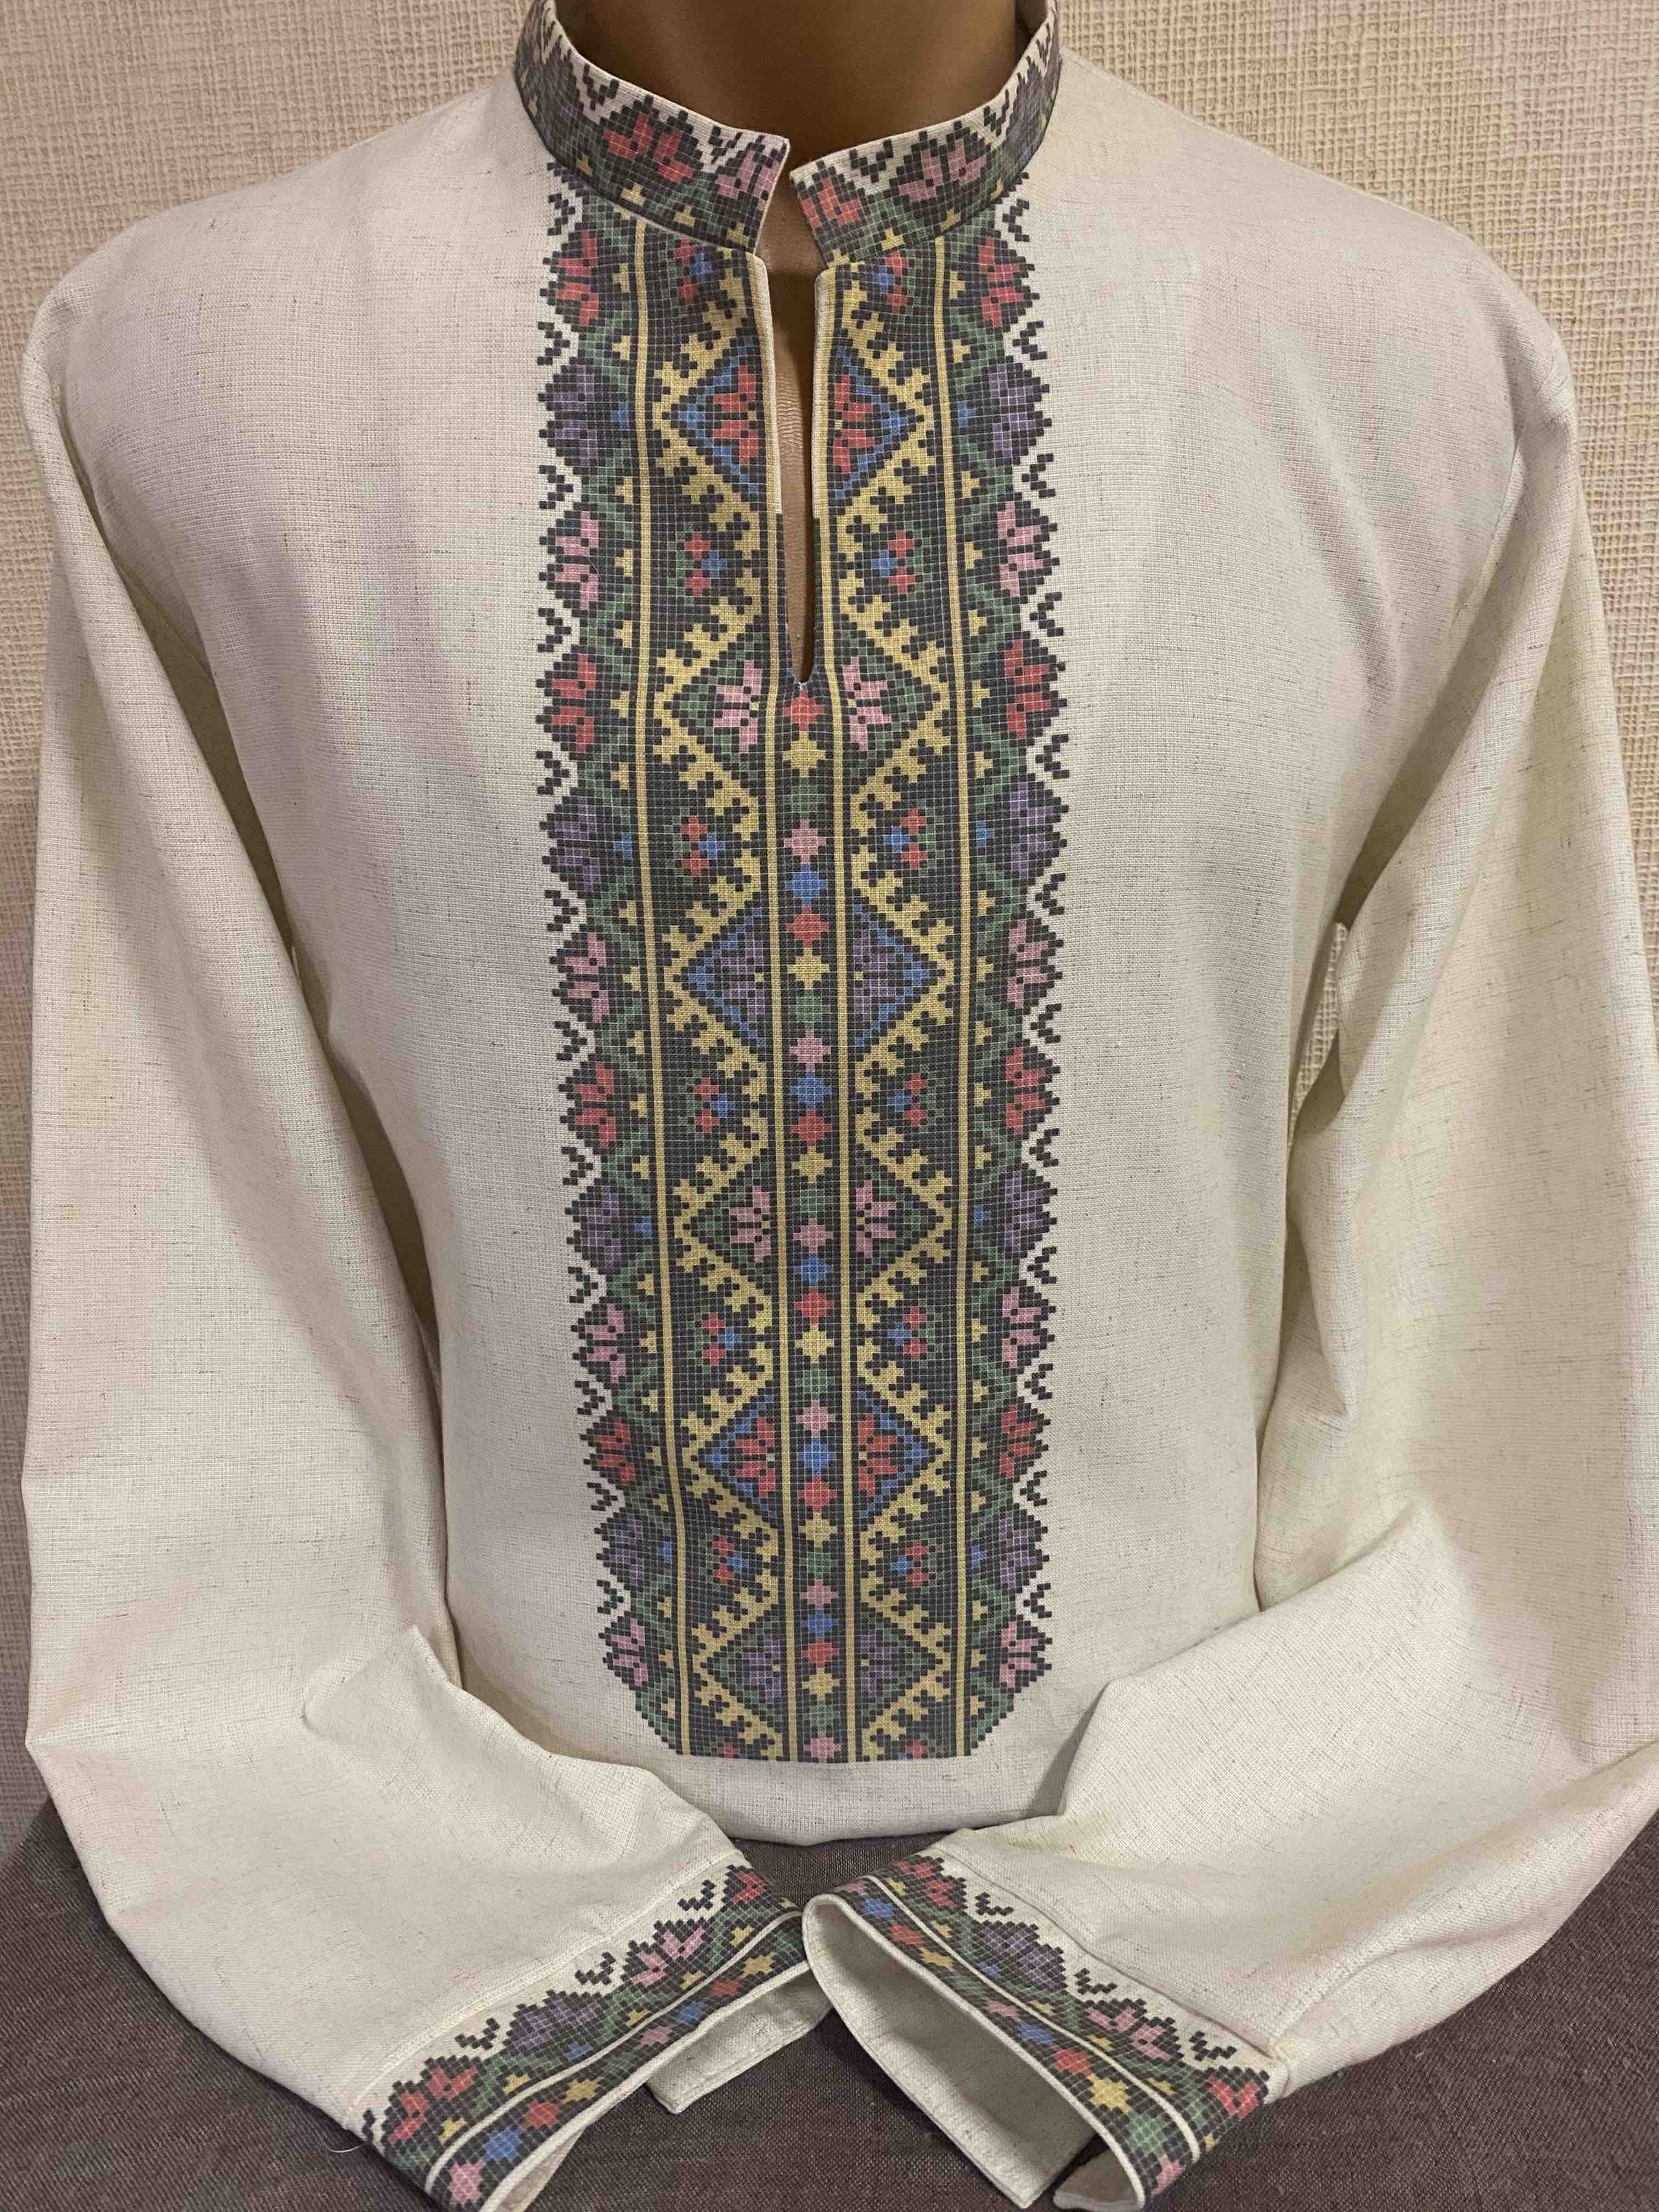 Пошита чоловіча сорочка для вишивання бісером або нитками Кд-1011 Тернопільська область (Борщів)